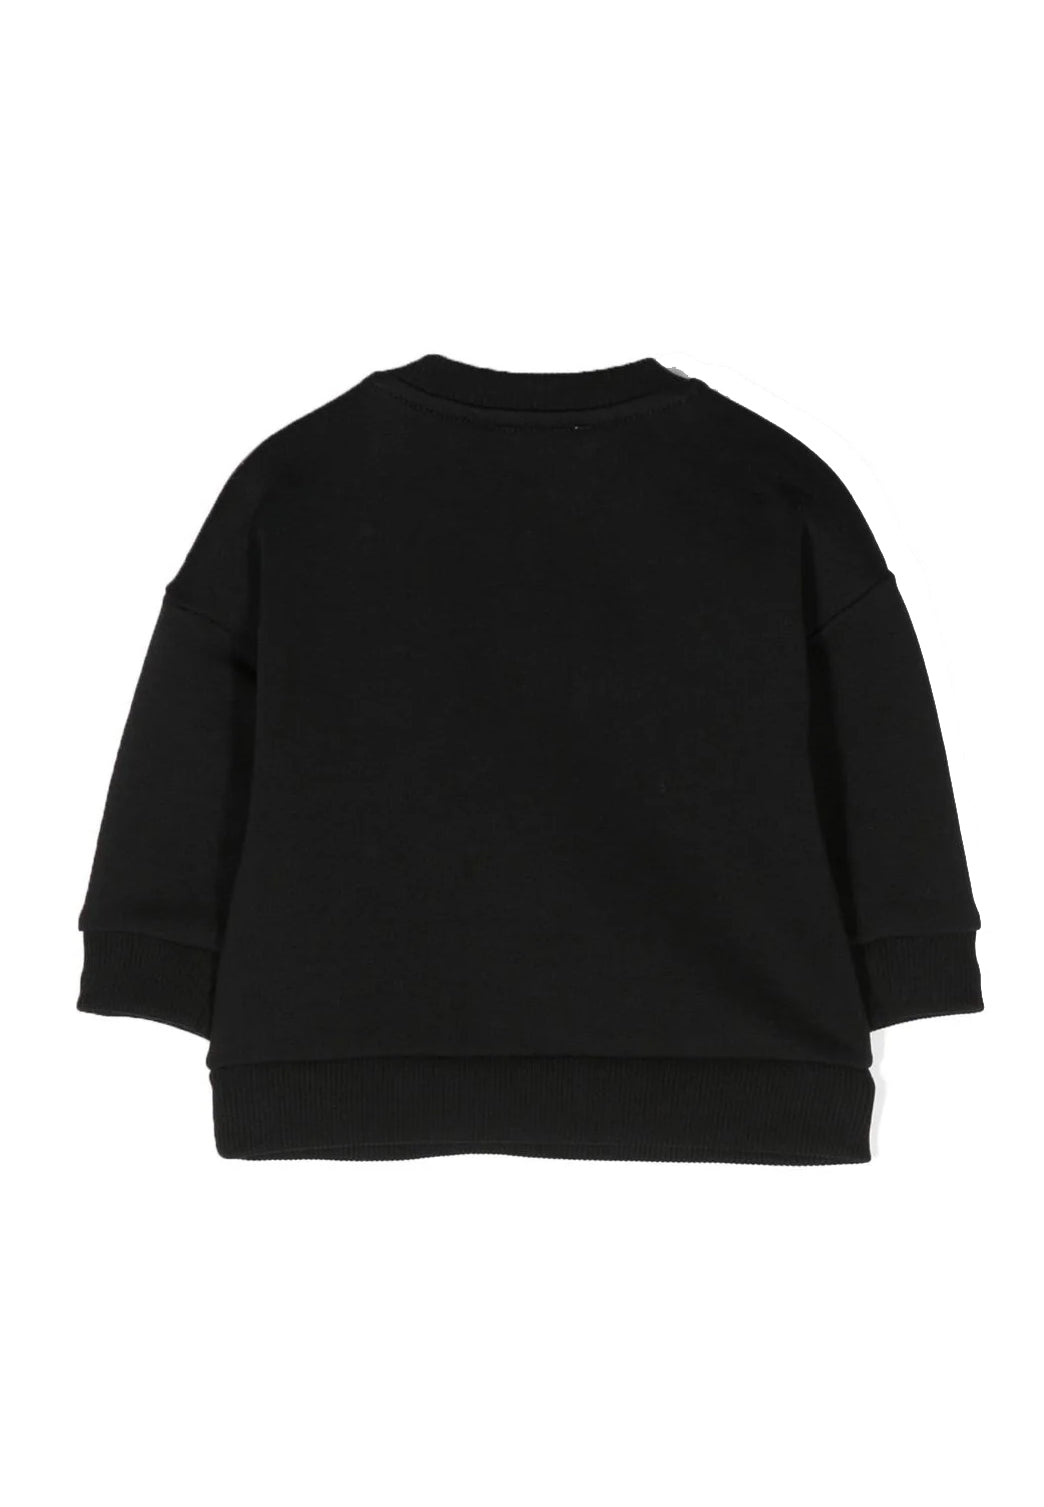 Schwarzes Sweatshirt mit Rundhalsausschnitt für Neugeborene